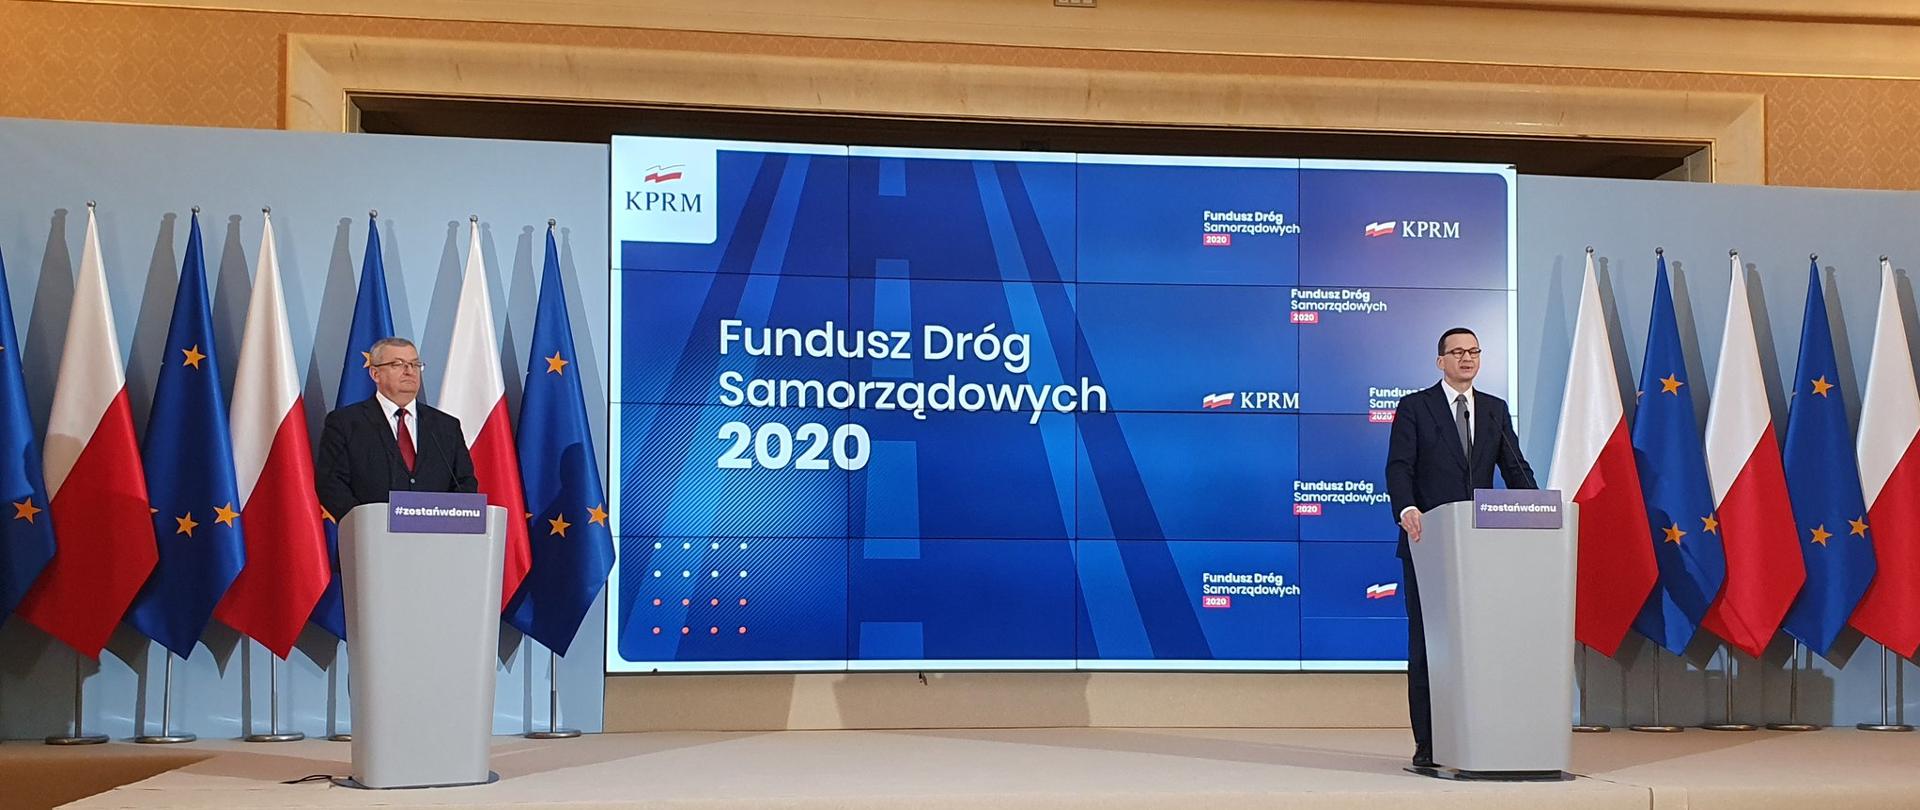 Premier Mateusz Morawiecki wraz z ministrem infrastruktury Andrzejem Adamczykiem ogłosili realizację zadań z Funduszu Dróg Samorządowych na 2020 rok